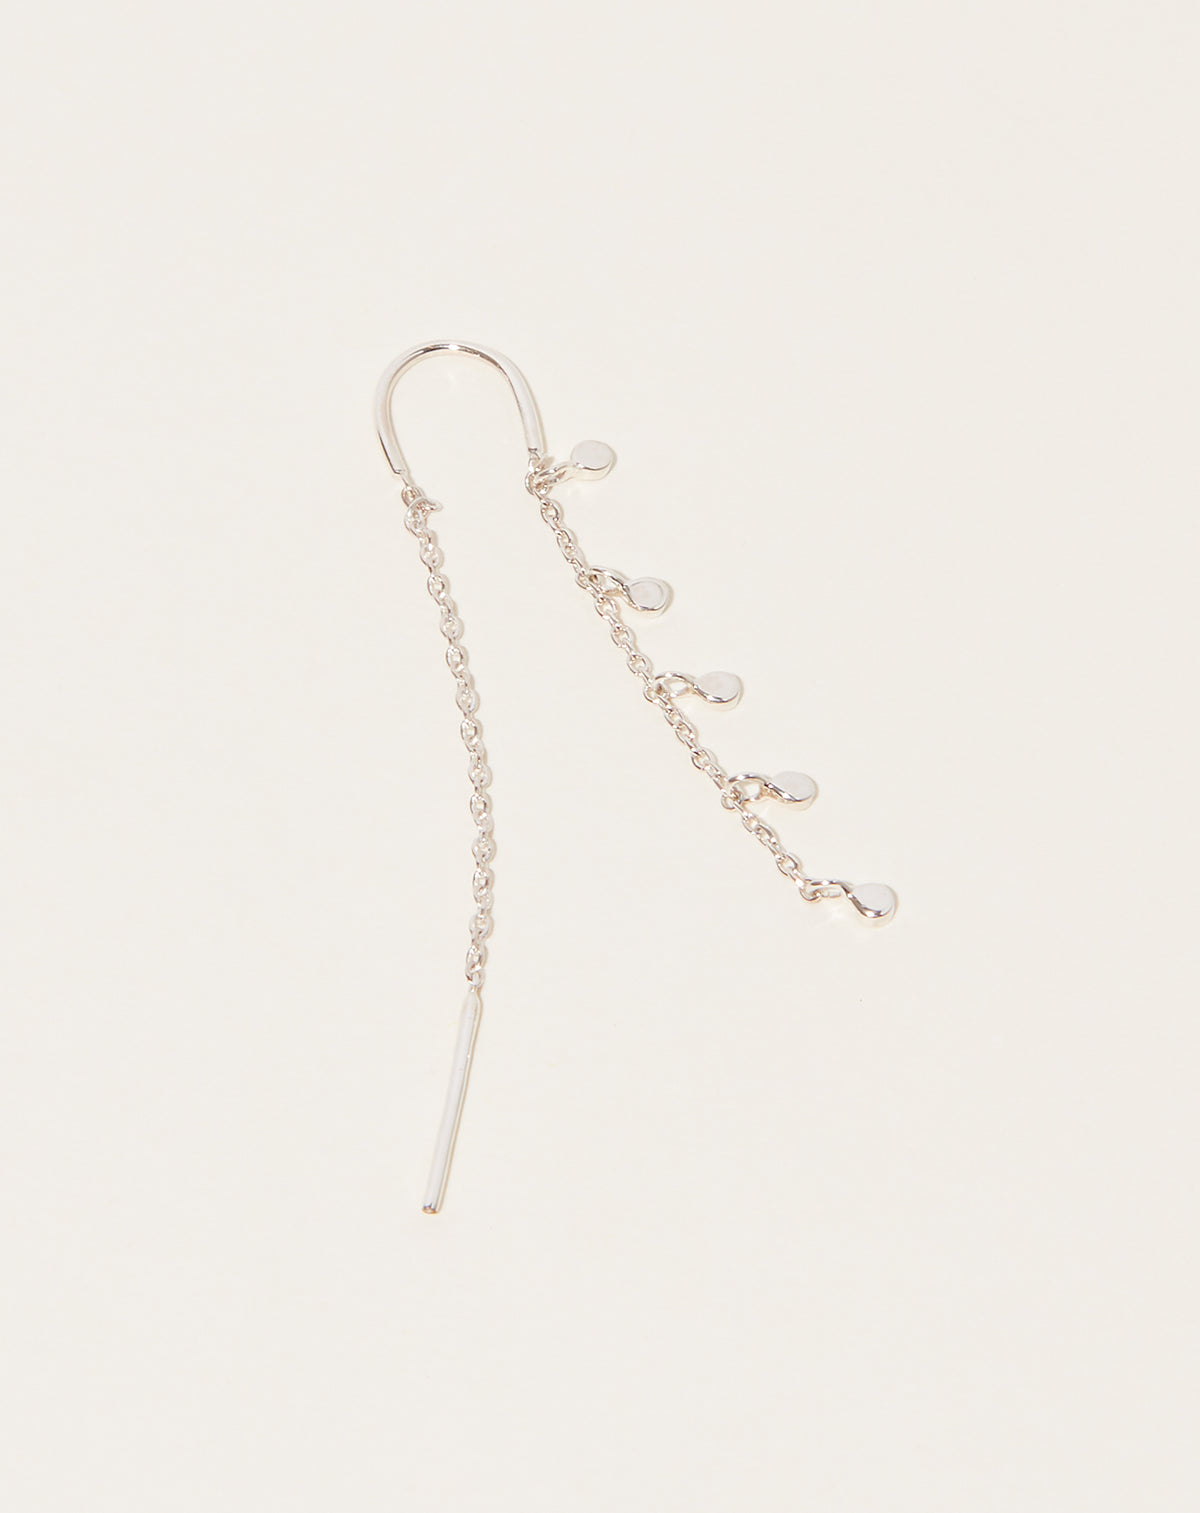 400Pcs Clear Earrings – KMEOSCH Jewelry